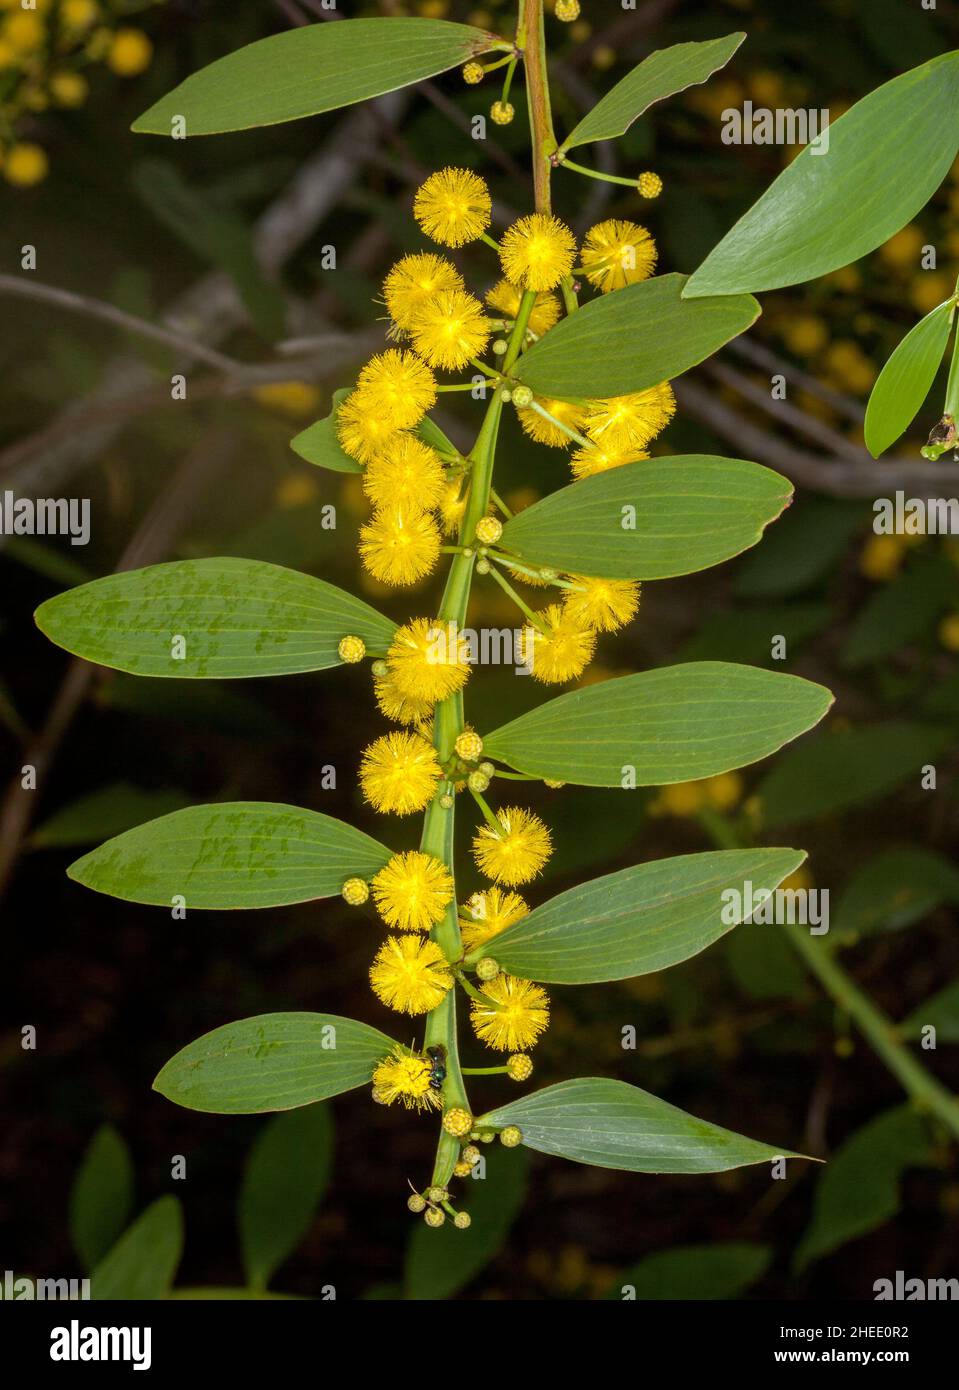 Australische Wildblumen, Cluster von leuchtend gelb duftenden Blumen und grünen Blättern von Wattle Tree / Acacia vor dunklem Hintergrund Stockfoto